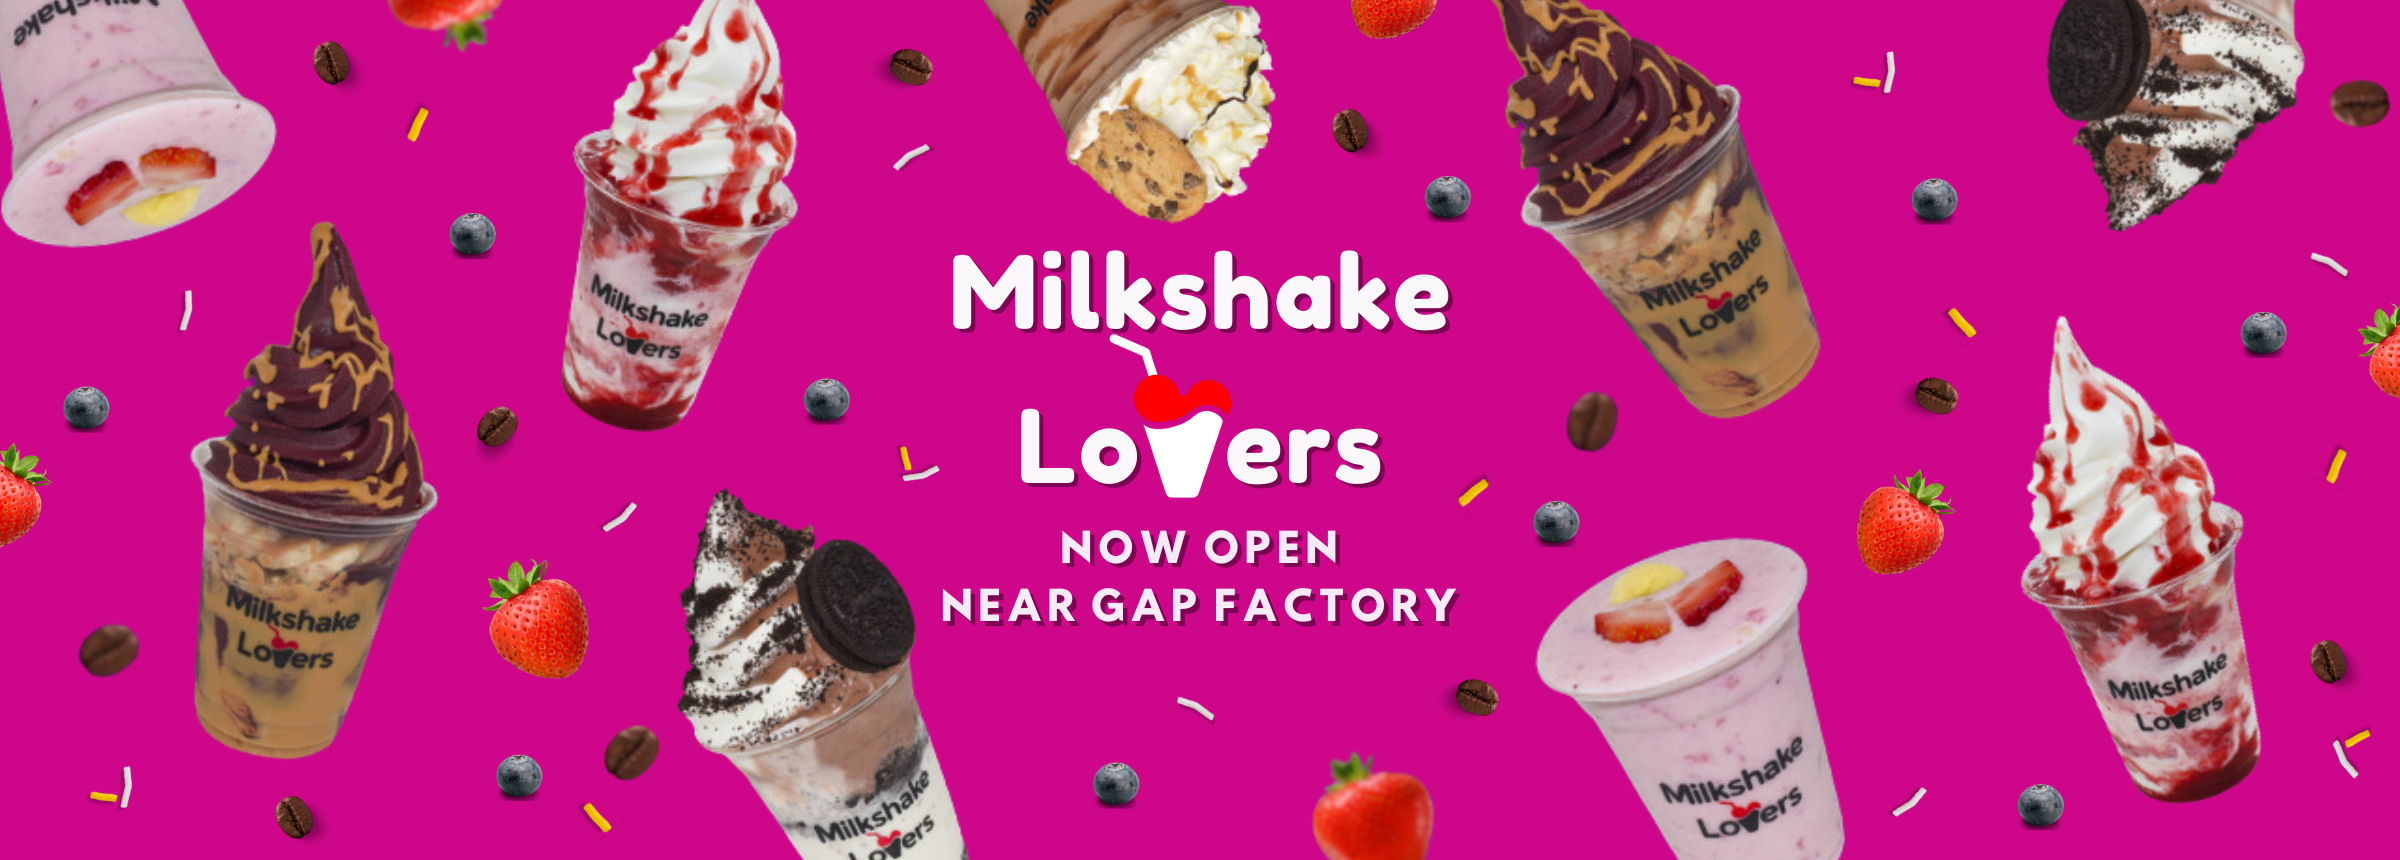 Milkshake Lovers Website Slider 2400 x 860